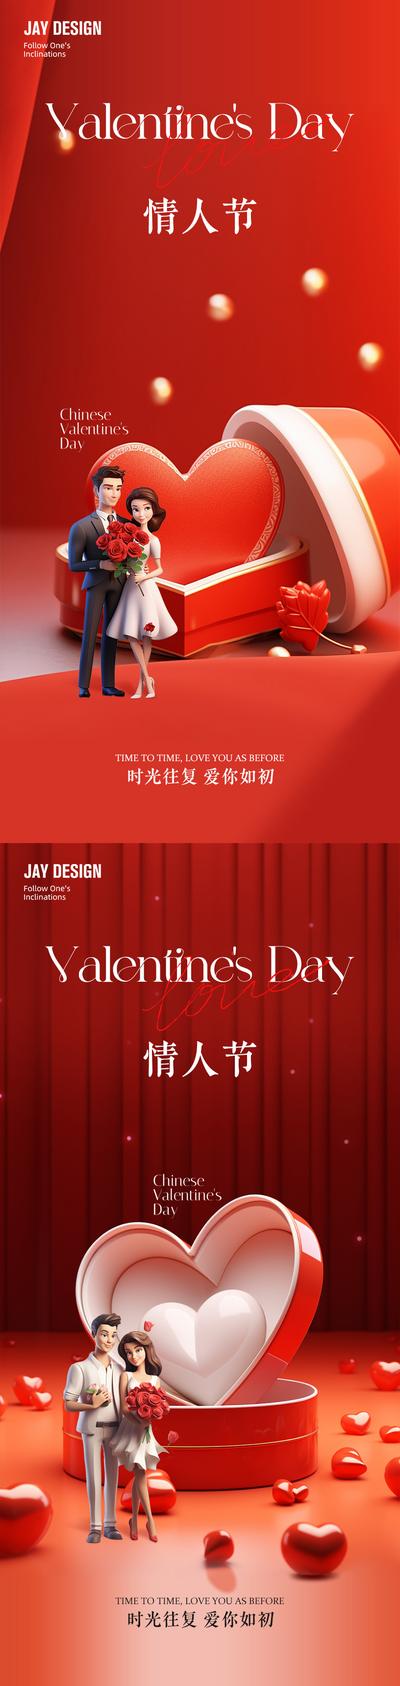 南门网 广告 海报 房地产 情人节 公历节日 爱心 情侣 礼物 红色 520